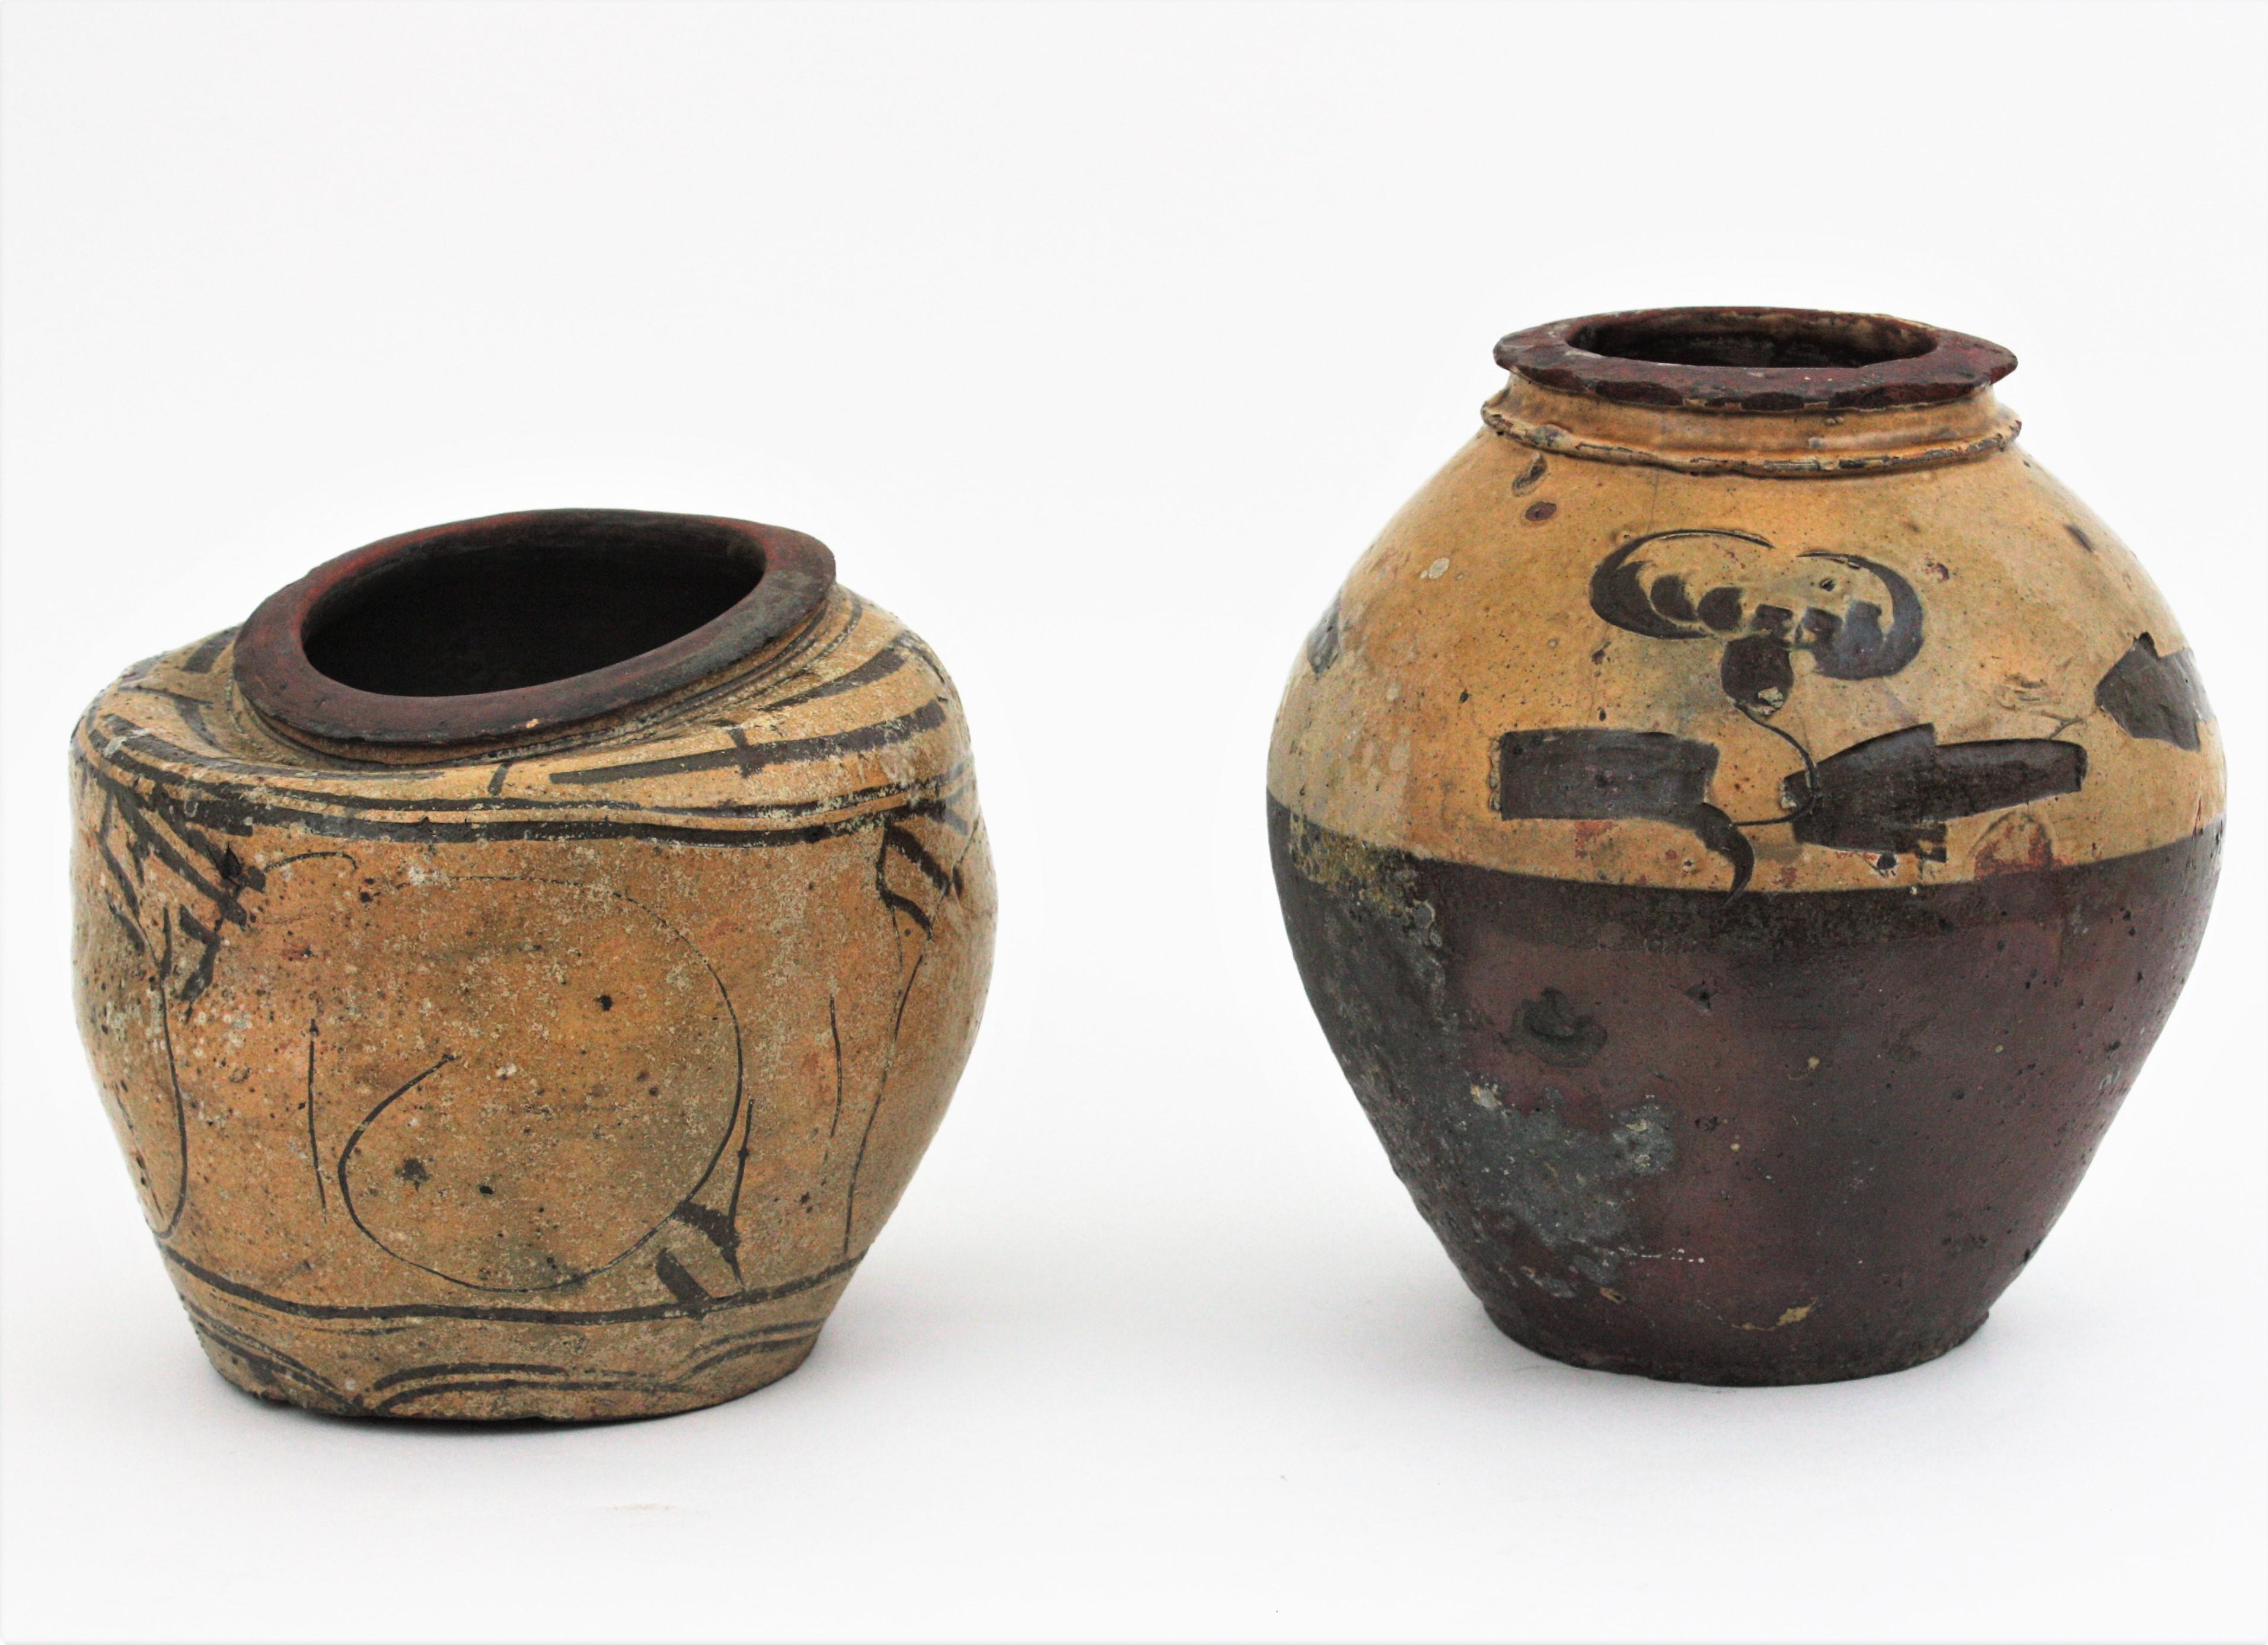 Paar Terrakotta-Töpfe oder -Gefäße mit Urnenform und glasierten Verzierungen, China, 1930er Jahre.
Rustikale, handgefertigte Terrakotta-Weinkrüge oder Einmachgläser.
Der größere ist vom mittleren Teil bis zur Spitze mit cremefarbener glasierter